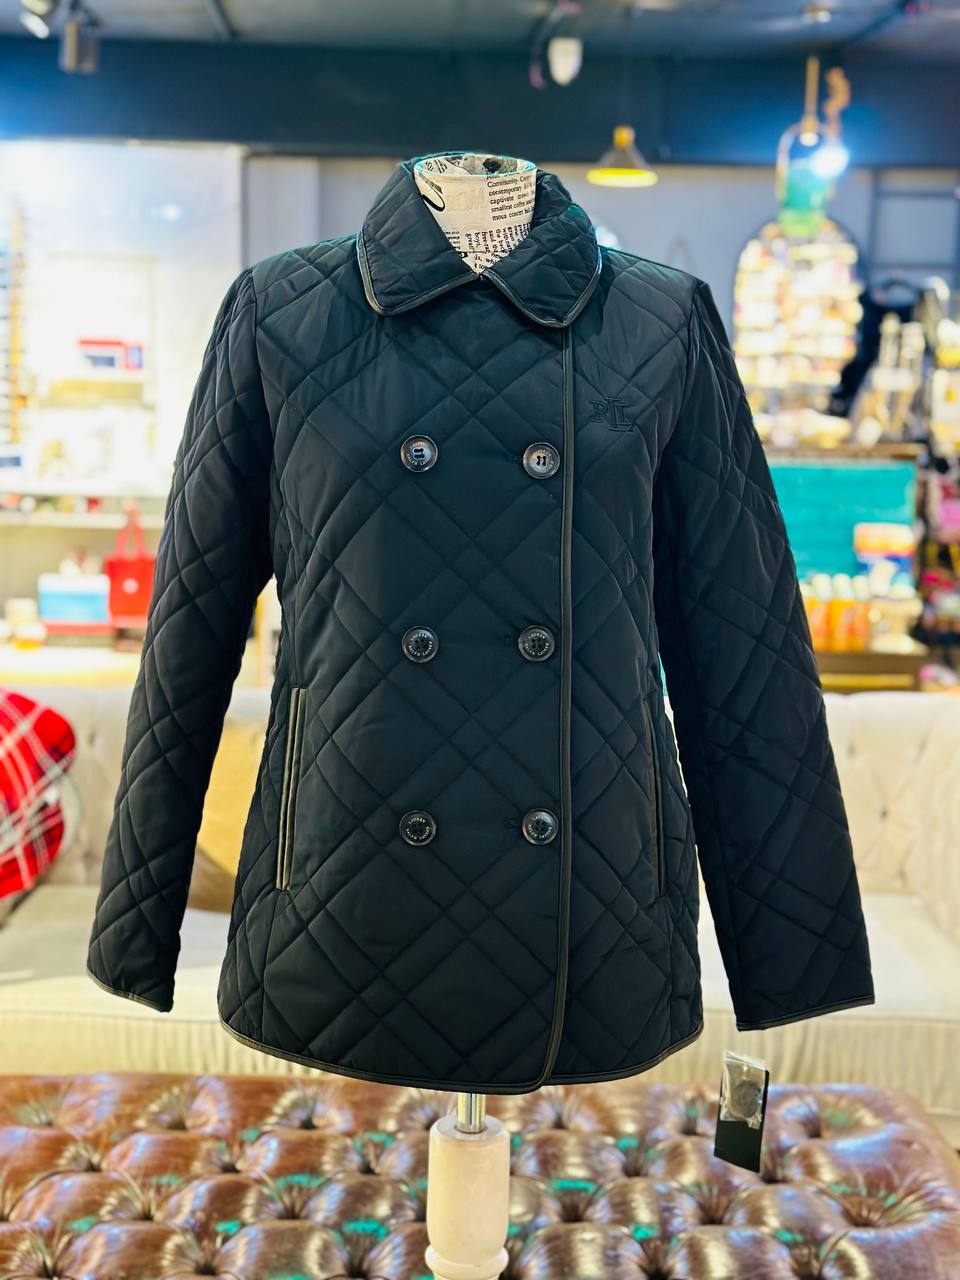 Ralph Lauren coat